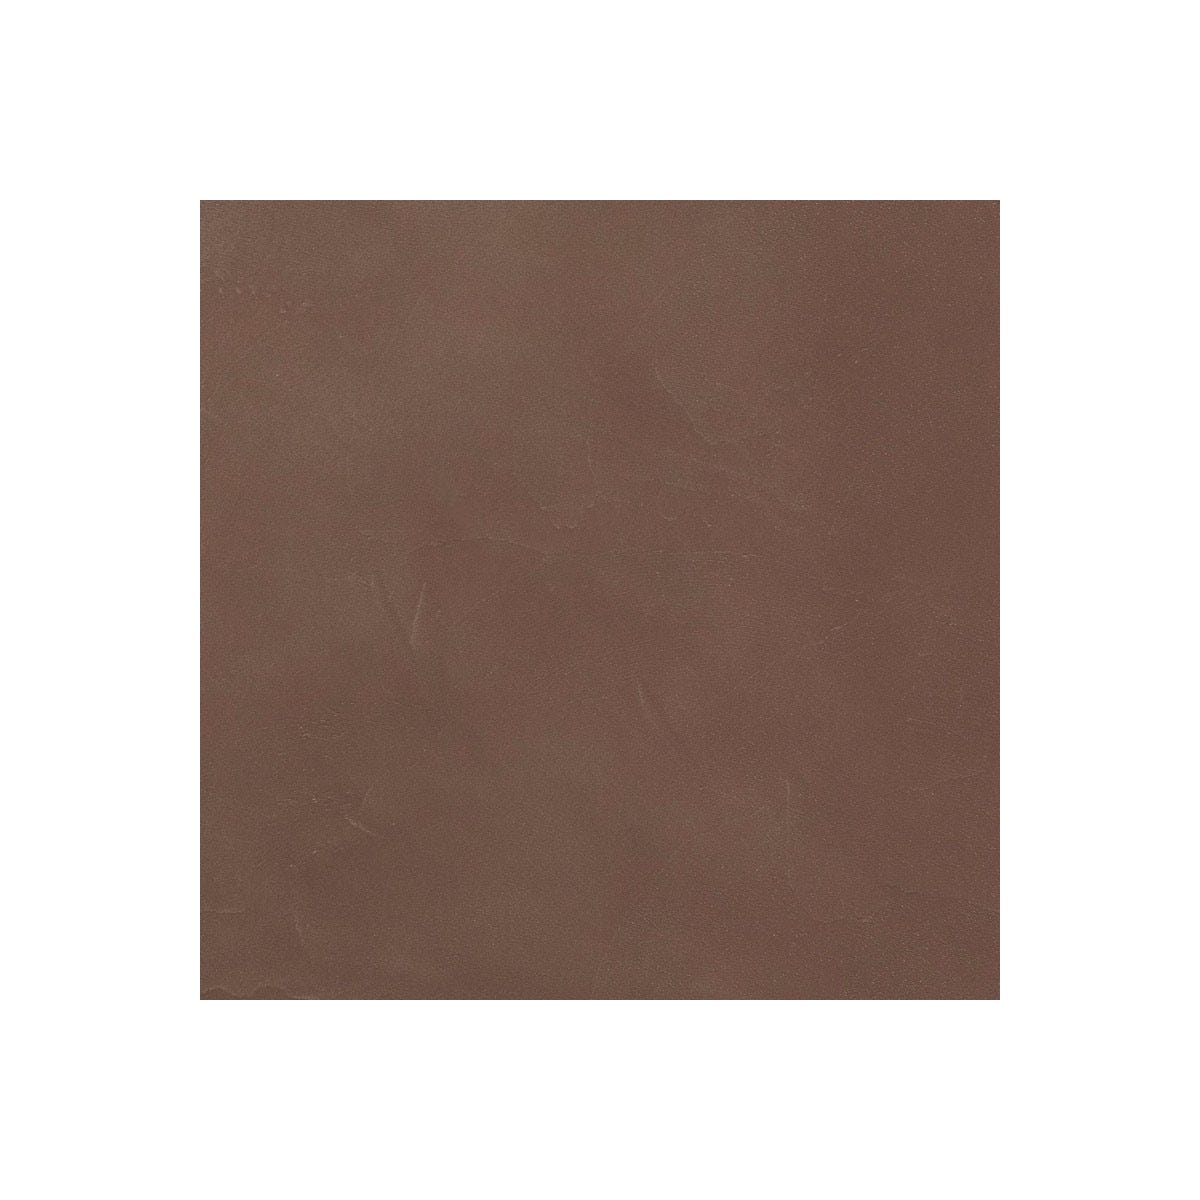 Béton Ciré Sol en - Primaire et vernis de finition inclus - 5 m² (en 2 couches) - Cacao Marron - ARCANE INDUSTRIES 6